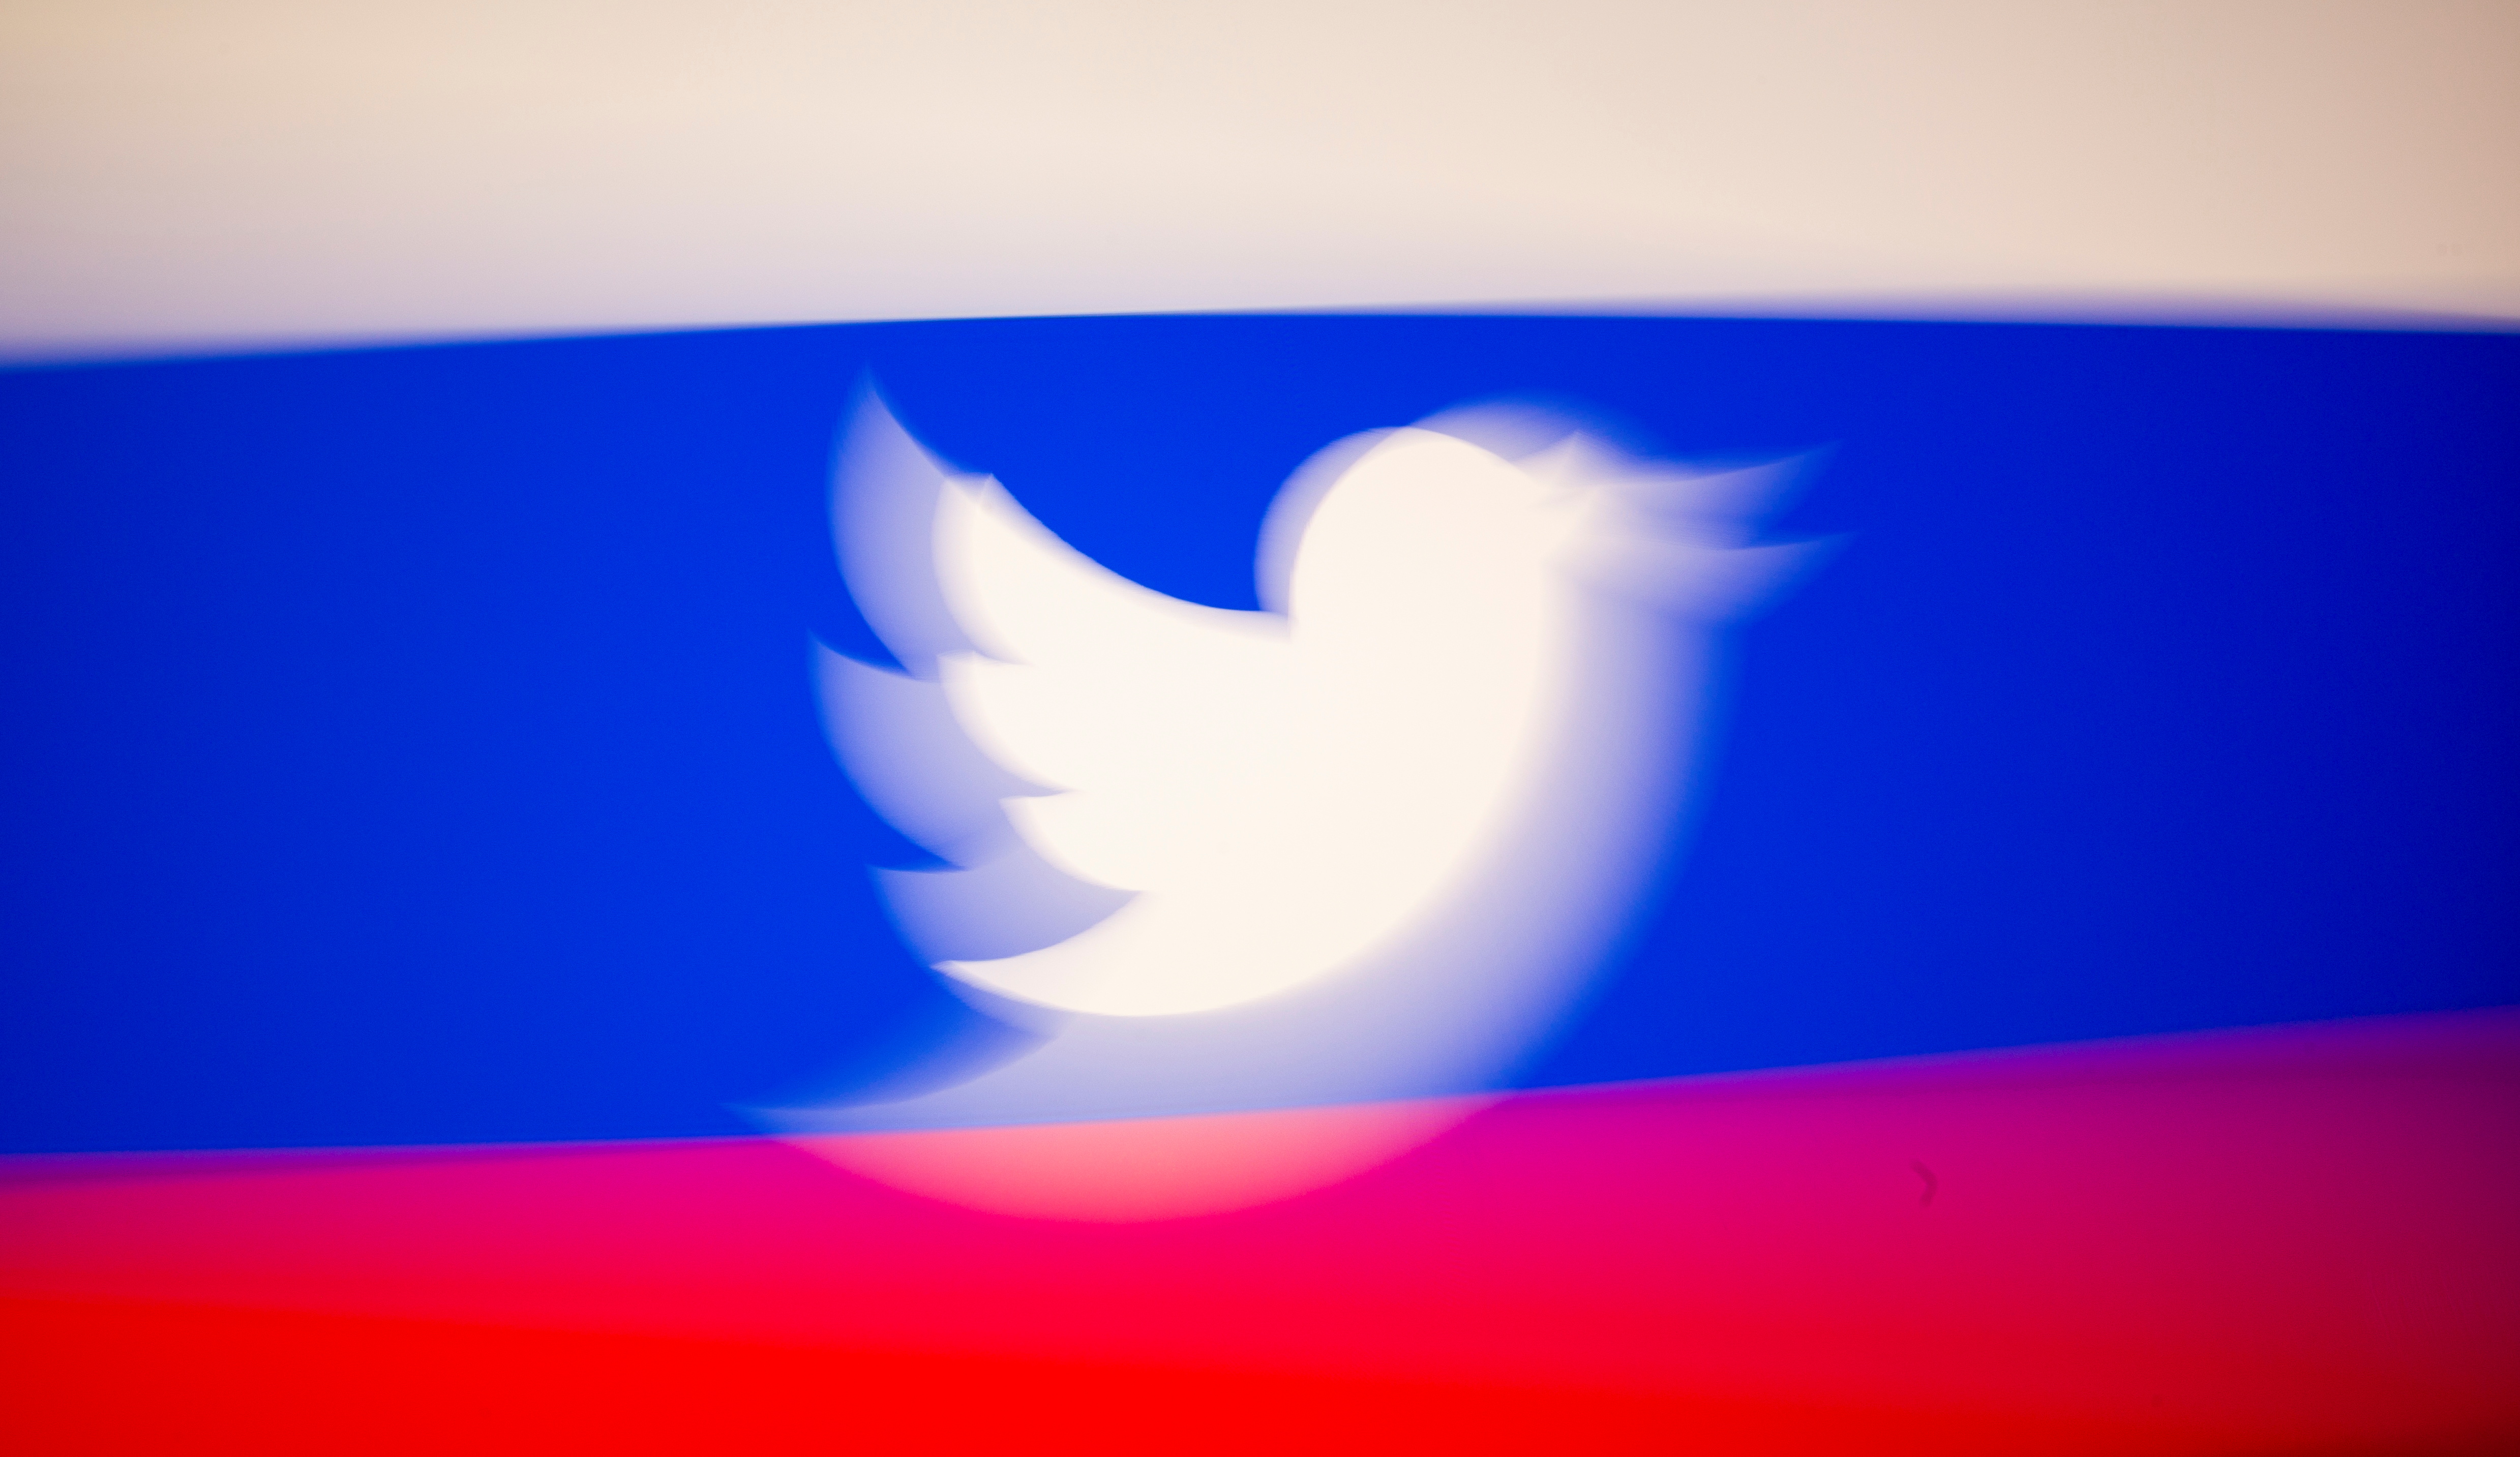 Rusia ralentiza el servicio de Twitter por no retirar contenidos prohibidos